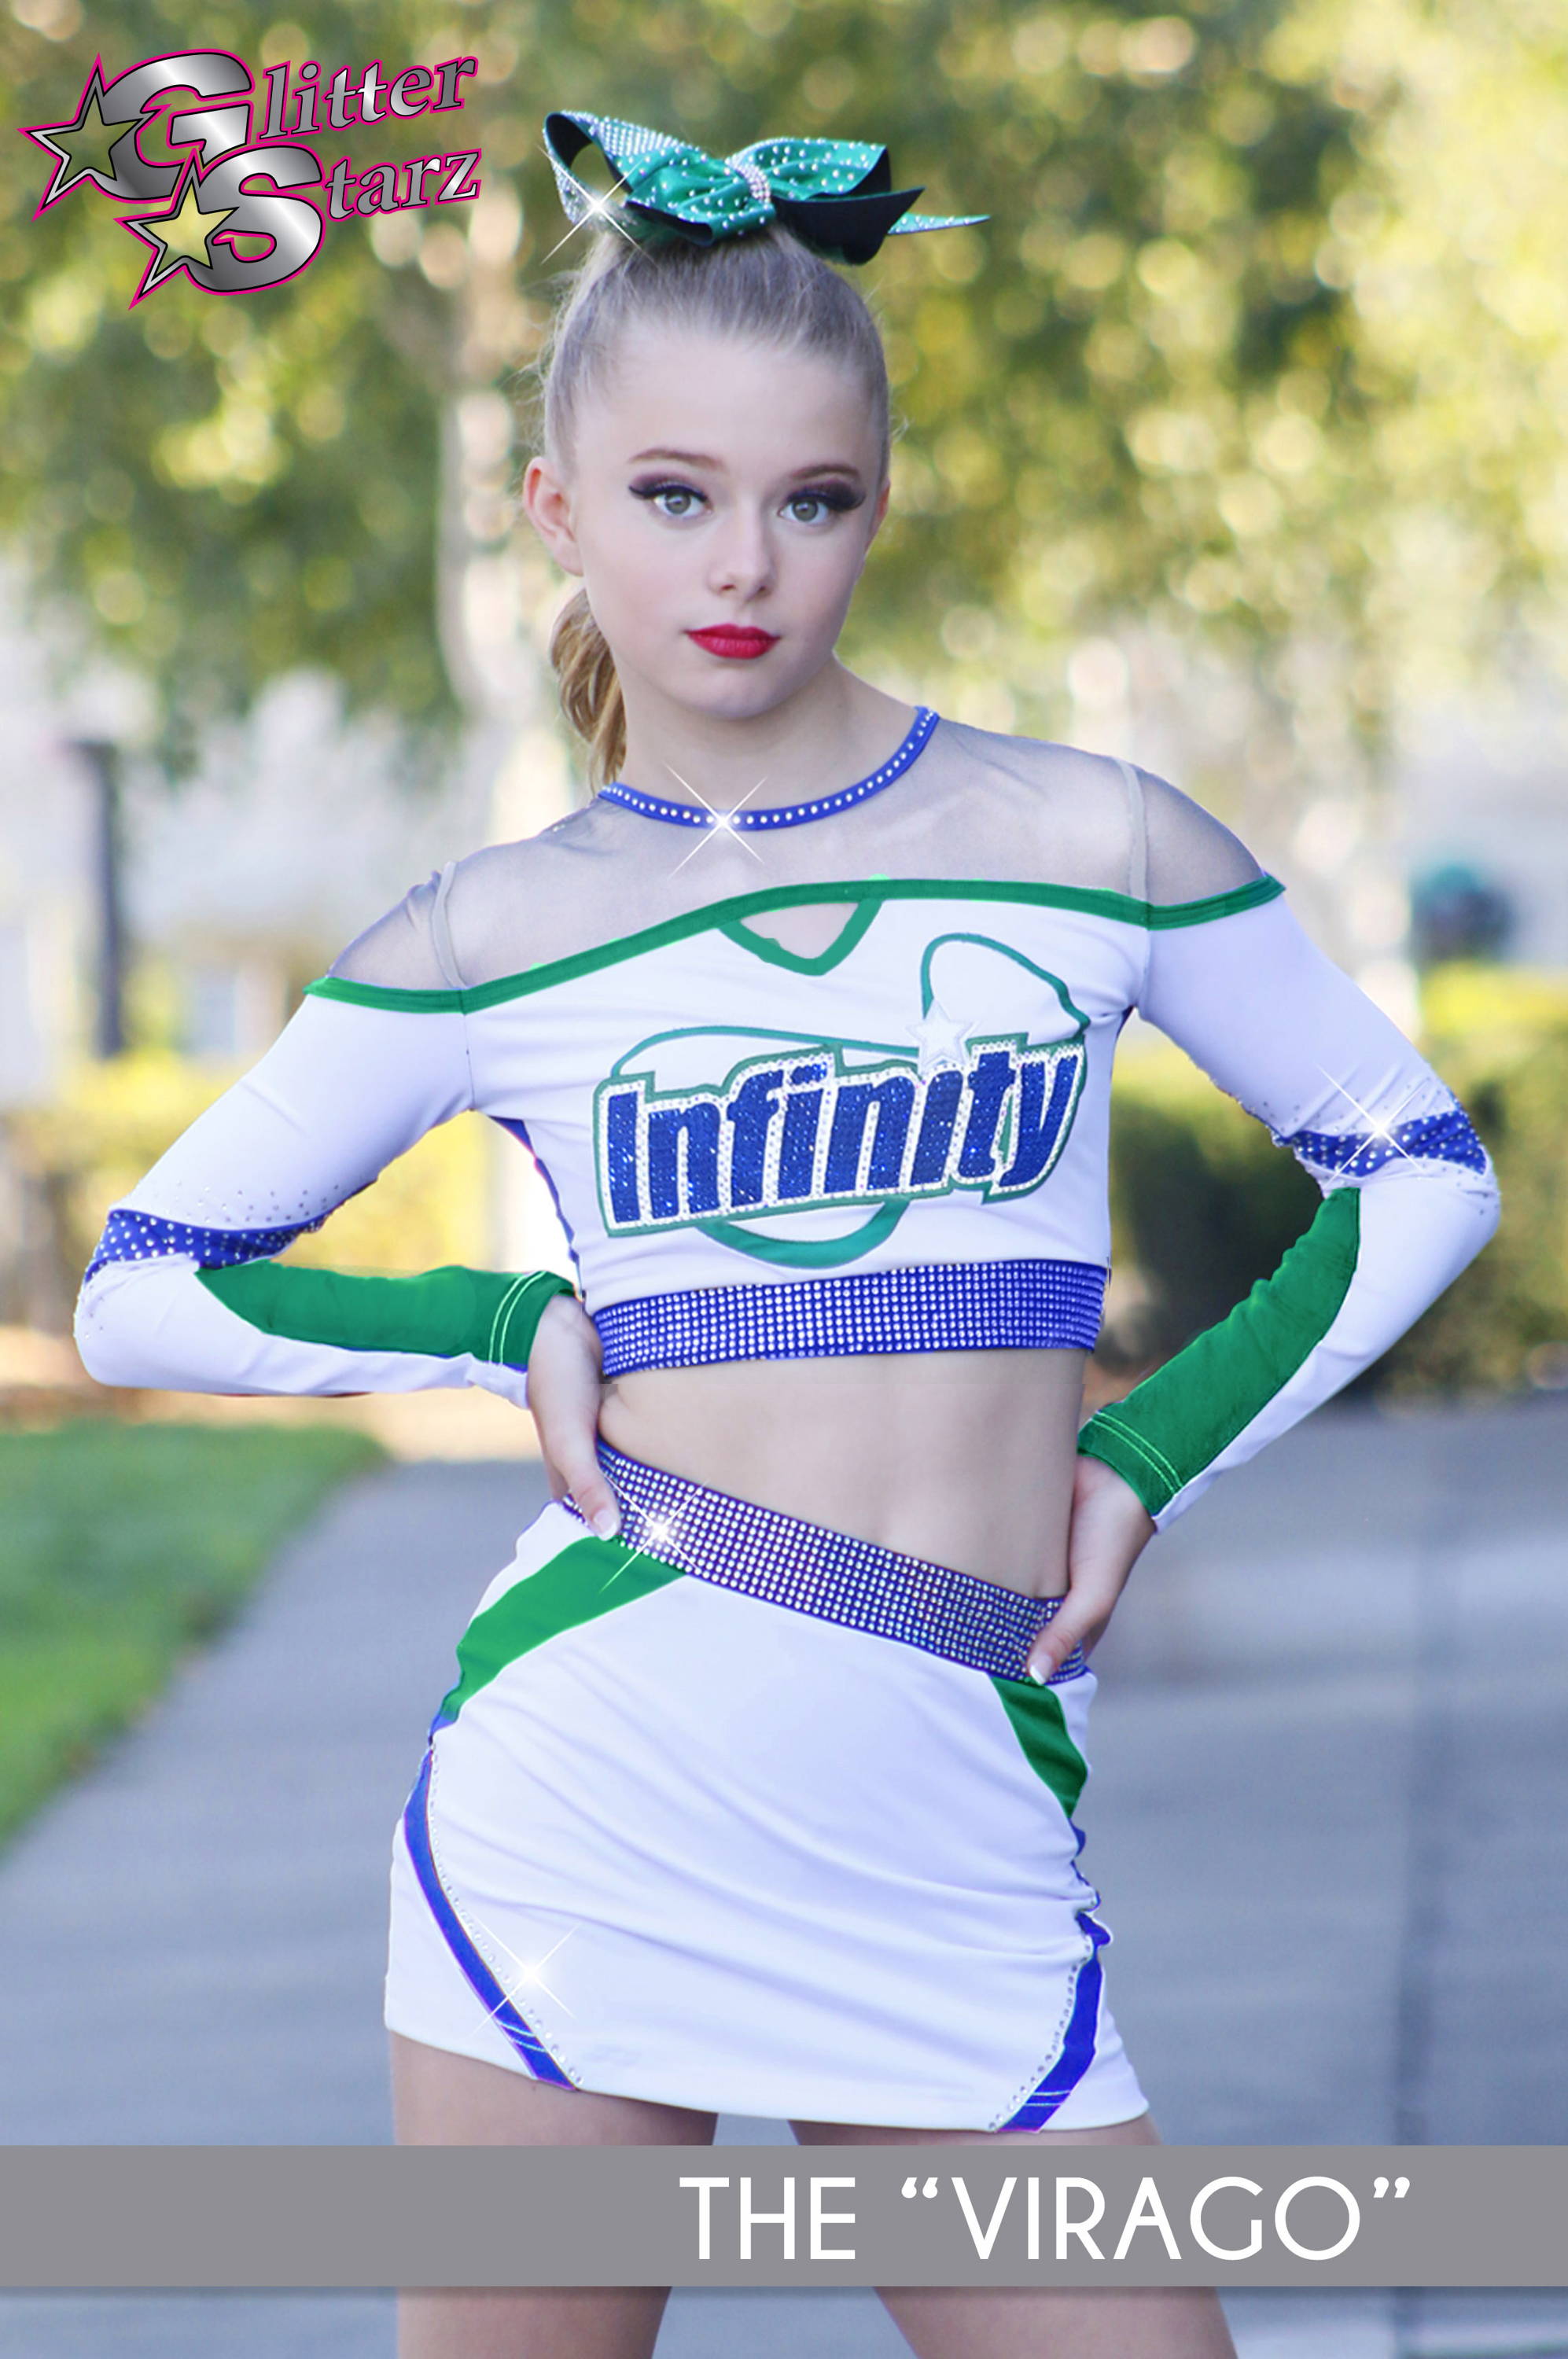 Kelly Green Uniforms by GlitterStarz - Glitterstarz